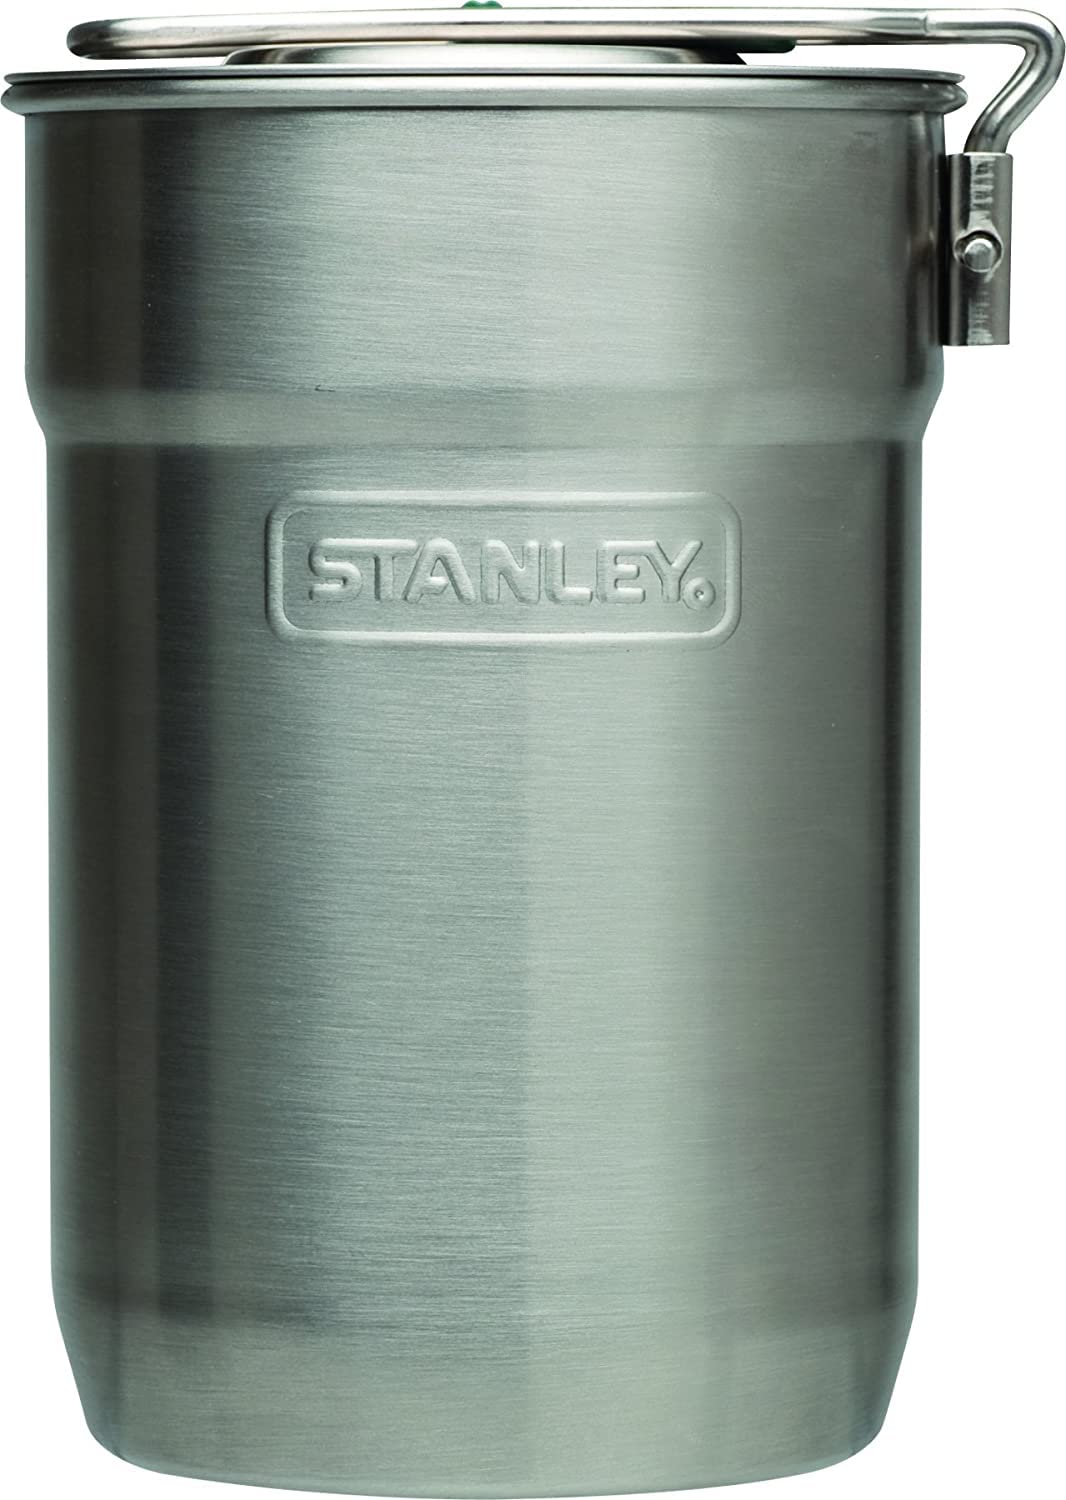 送料無料Stanley スタンレー アドェンチャーキャンプクックセット 0.71L 並行輸入品並行輸